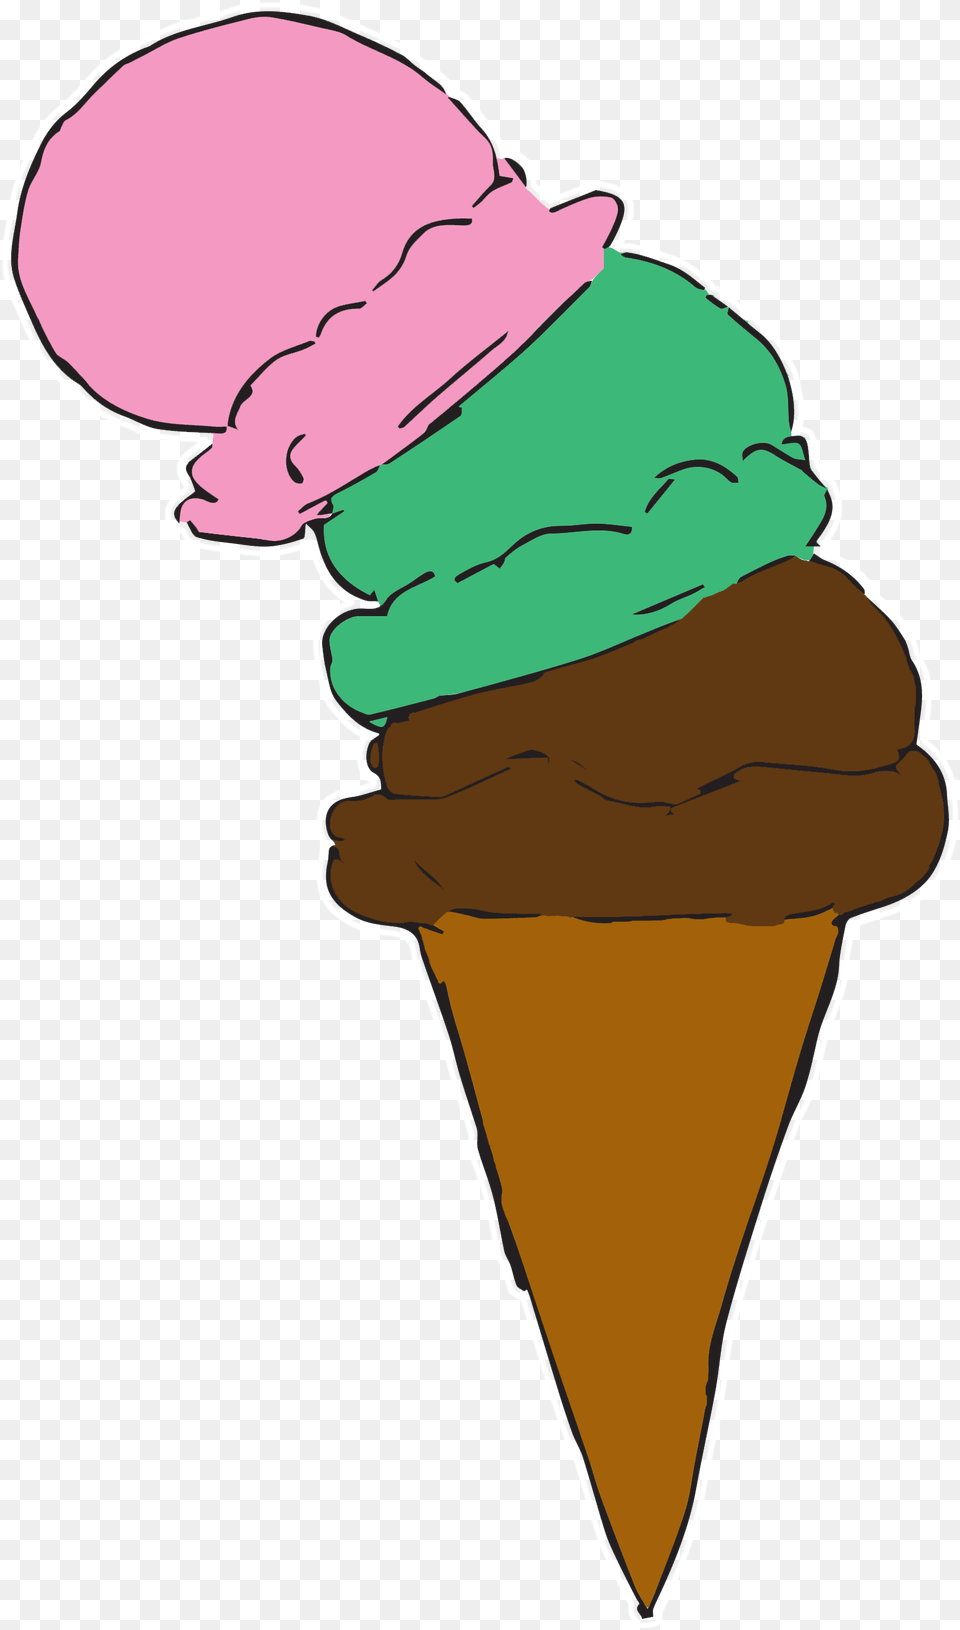 Transparent Cone Animated Cartoon Ice Cream Transparent, Dessert, Food, Ice Cream, Baby Png Image